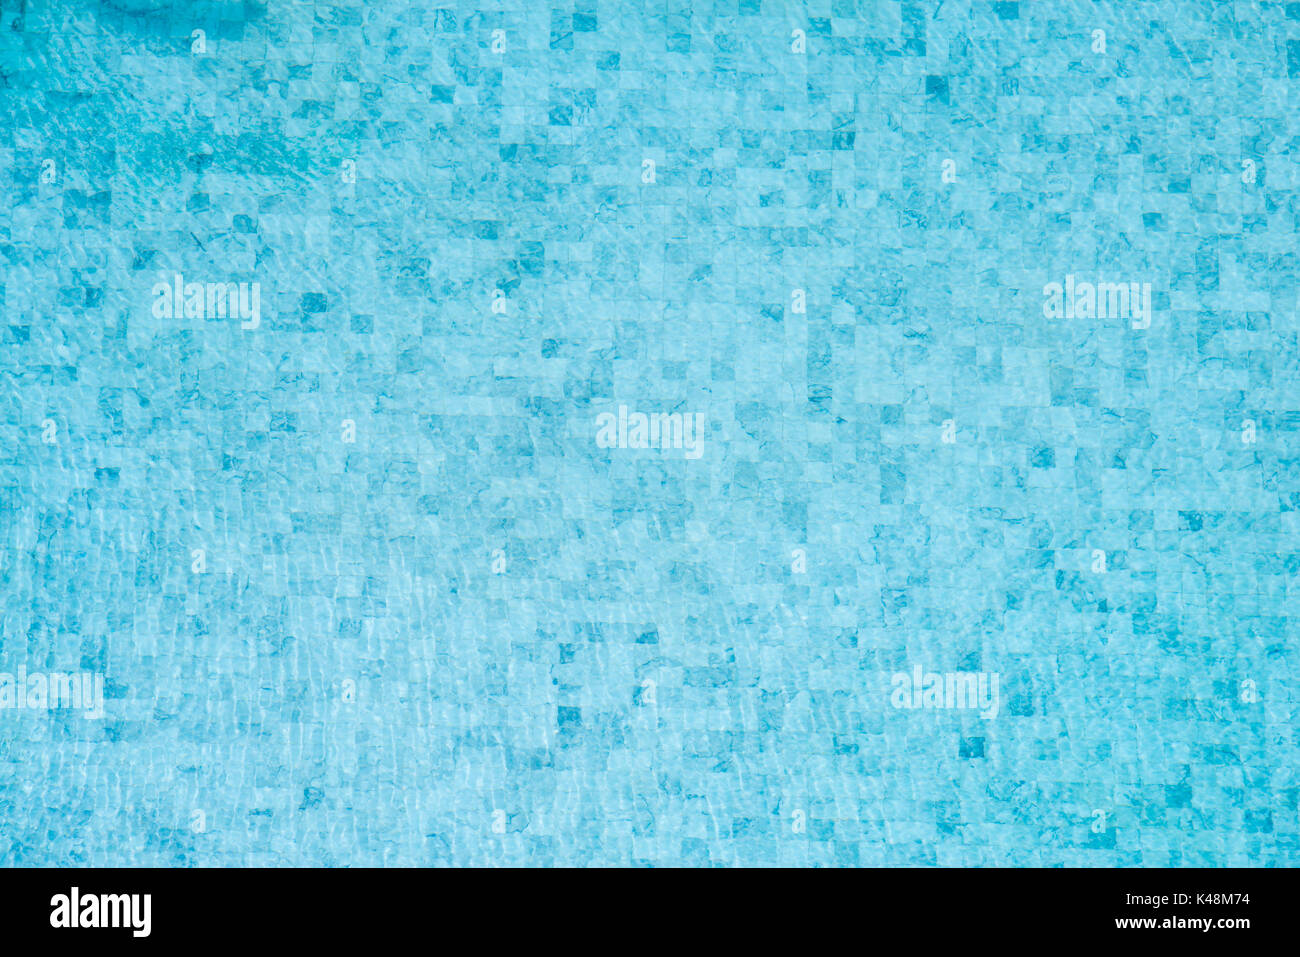 Swimming pool floor Stock Photo